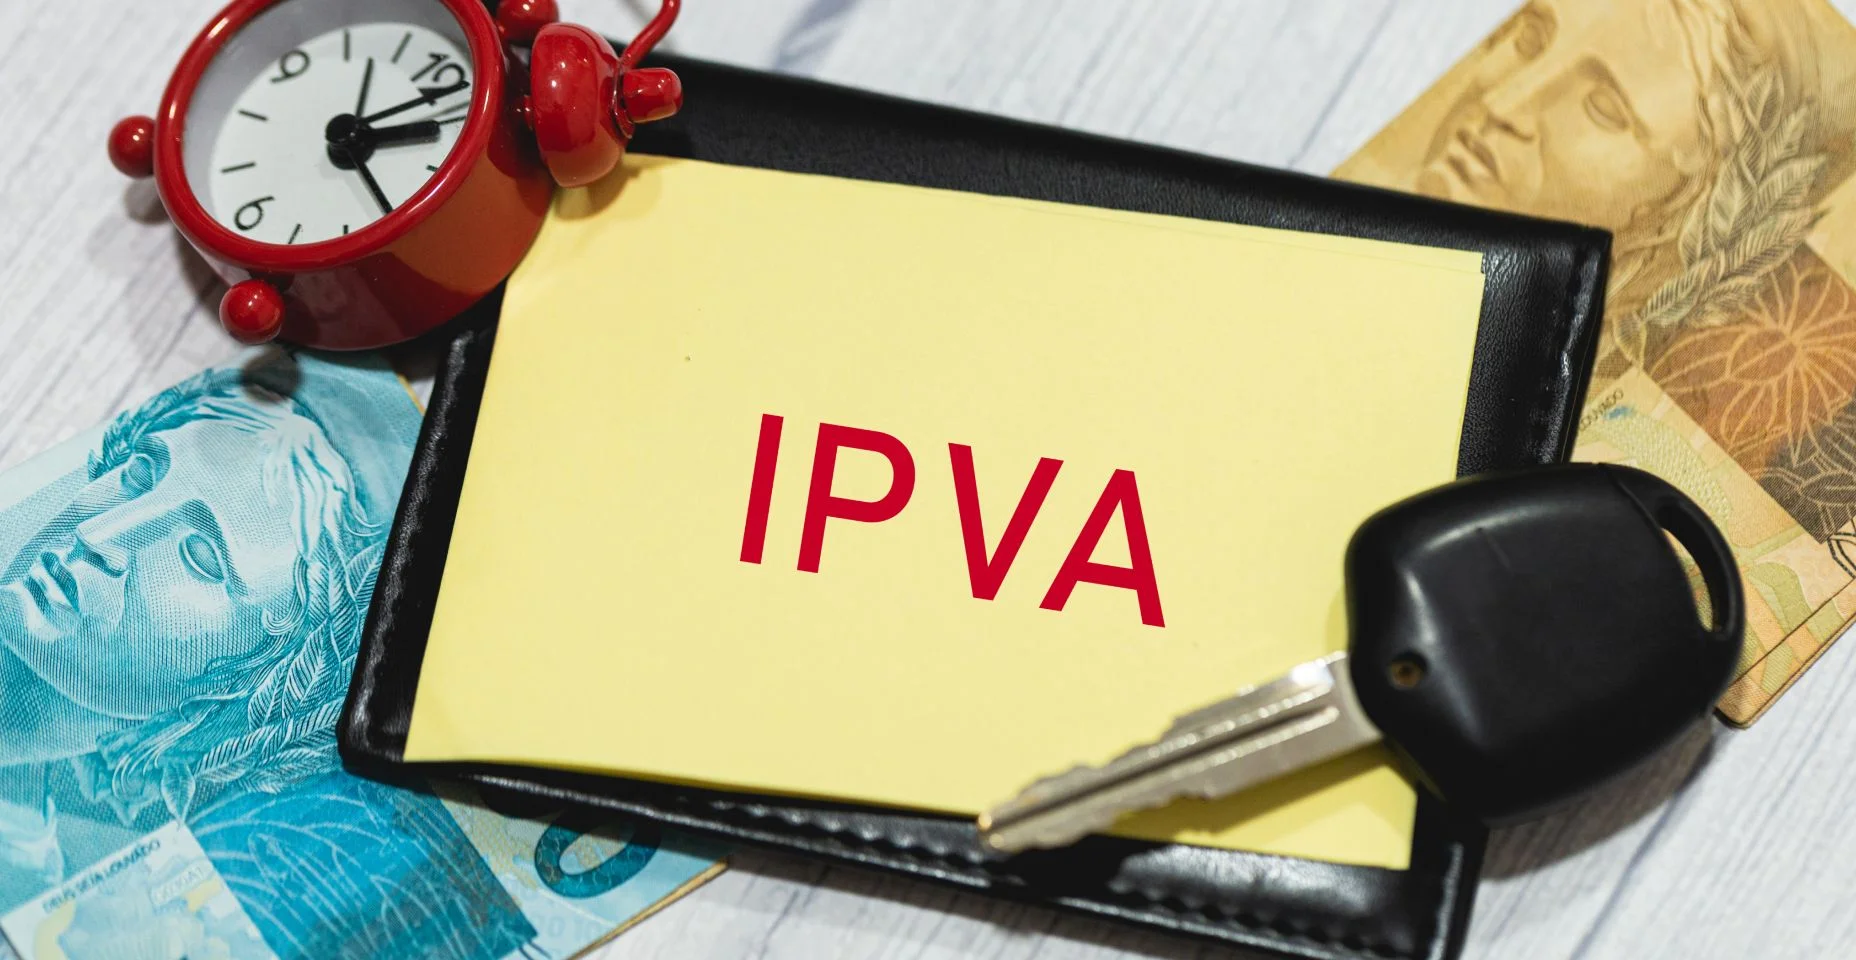 A sigla IPVA refere-se ao Imposto sobre a Propriedade de Veículos Automotores em português do Brasil escrito em um pedaço de papel. Notas de reais, chave do carro e portador de documento na composição.